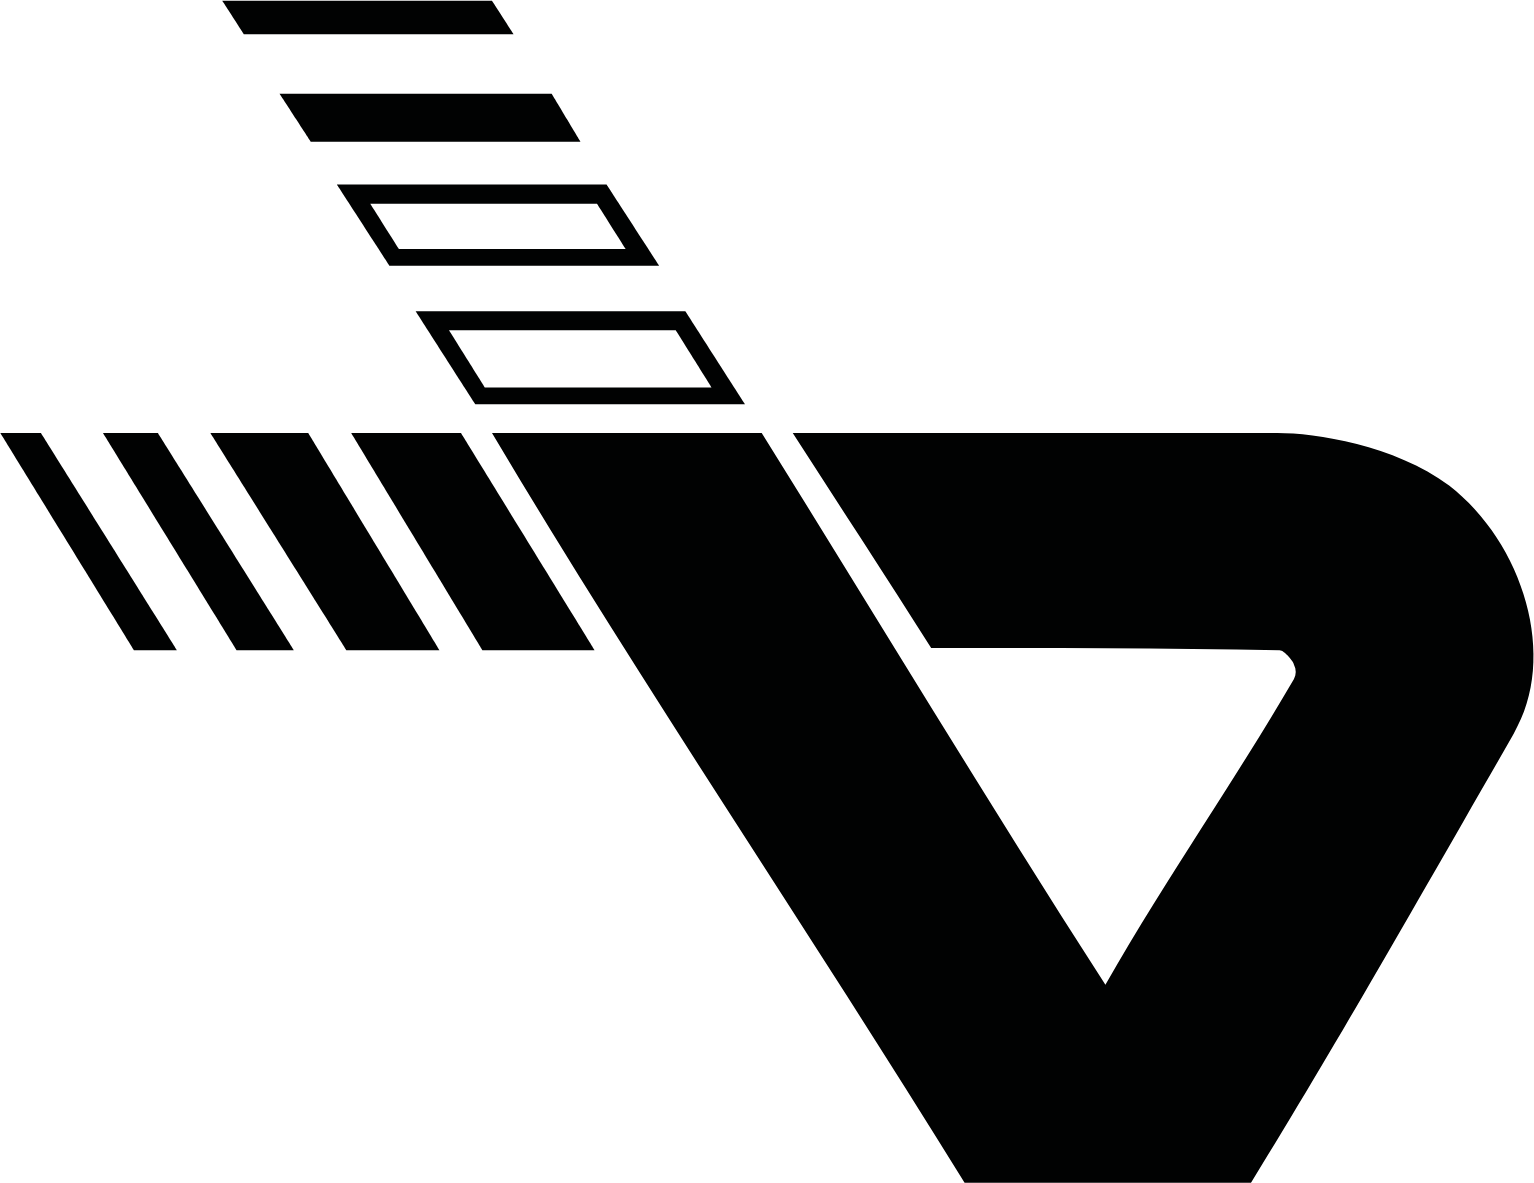 Vienna Airport logo (transparent PNG)